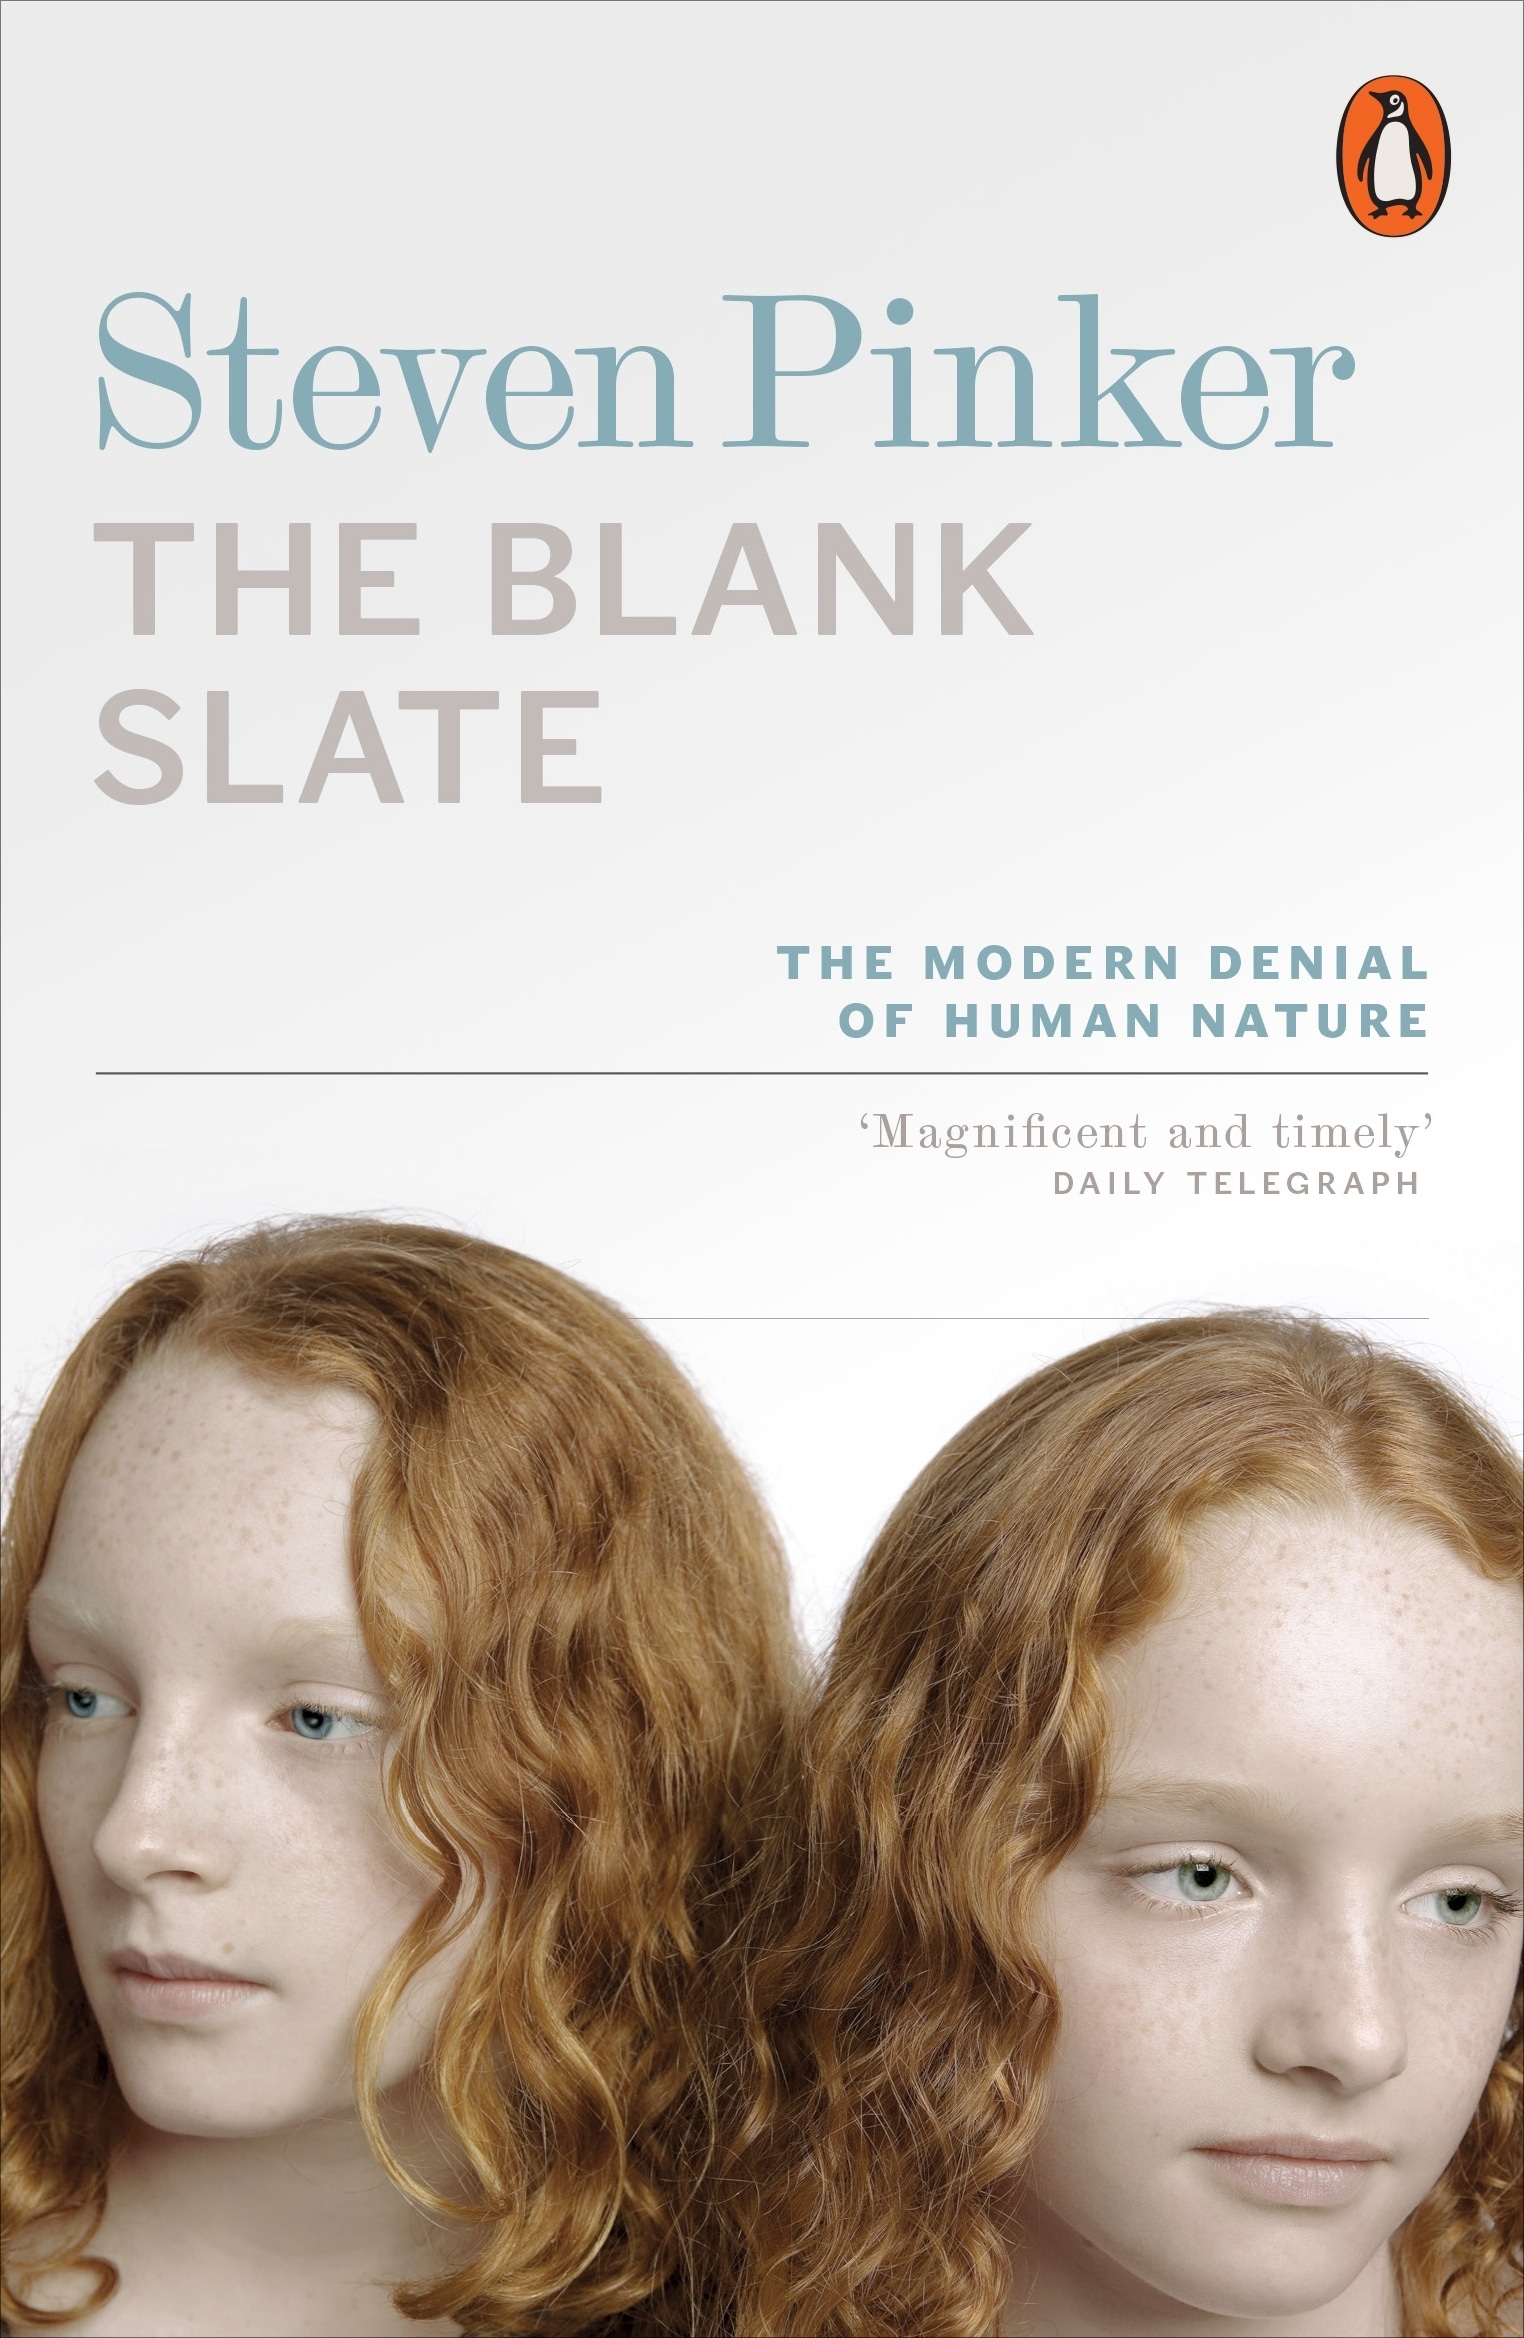 Book “The Blank Slate” by Steven Pinker